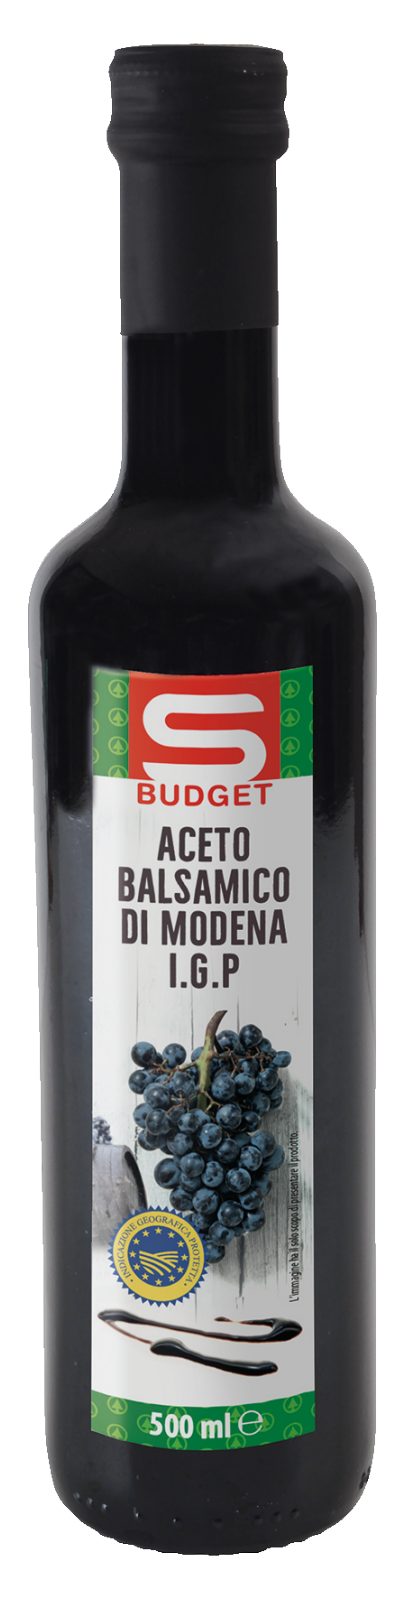 Aceto Balsamico di Modena IGP